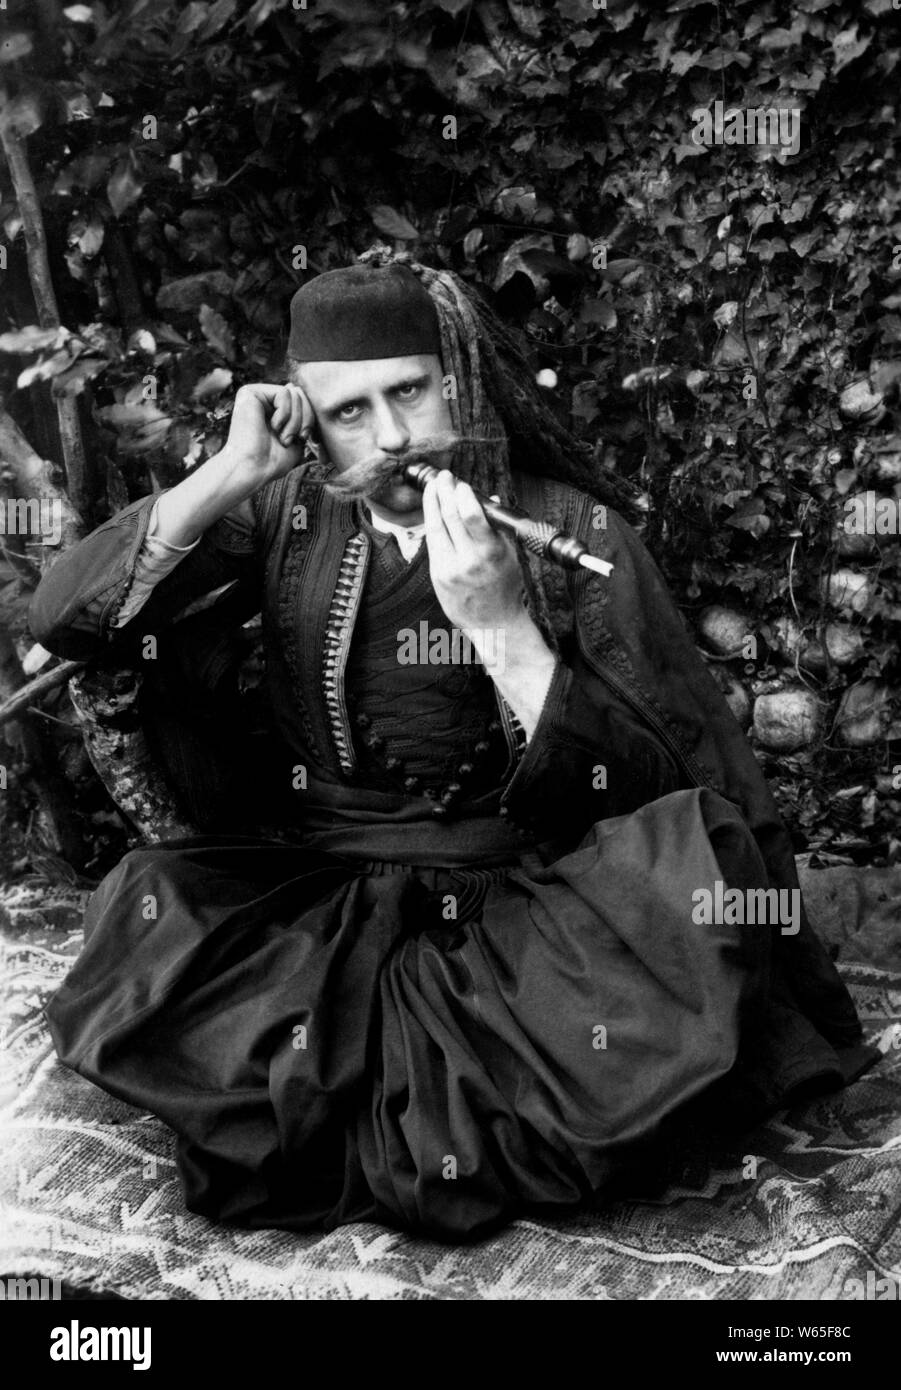 Fuma pipa albanesa en la época islámica, 1900-10 Foto de stock